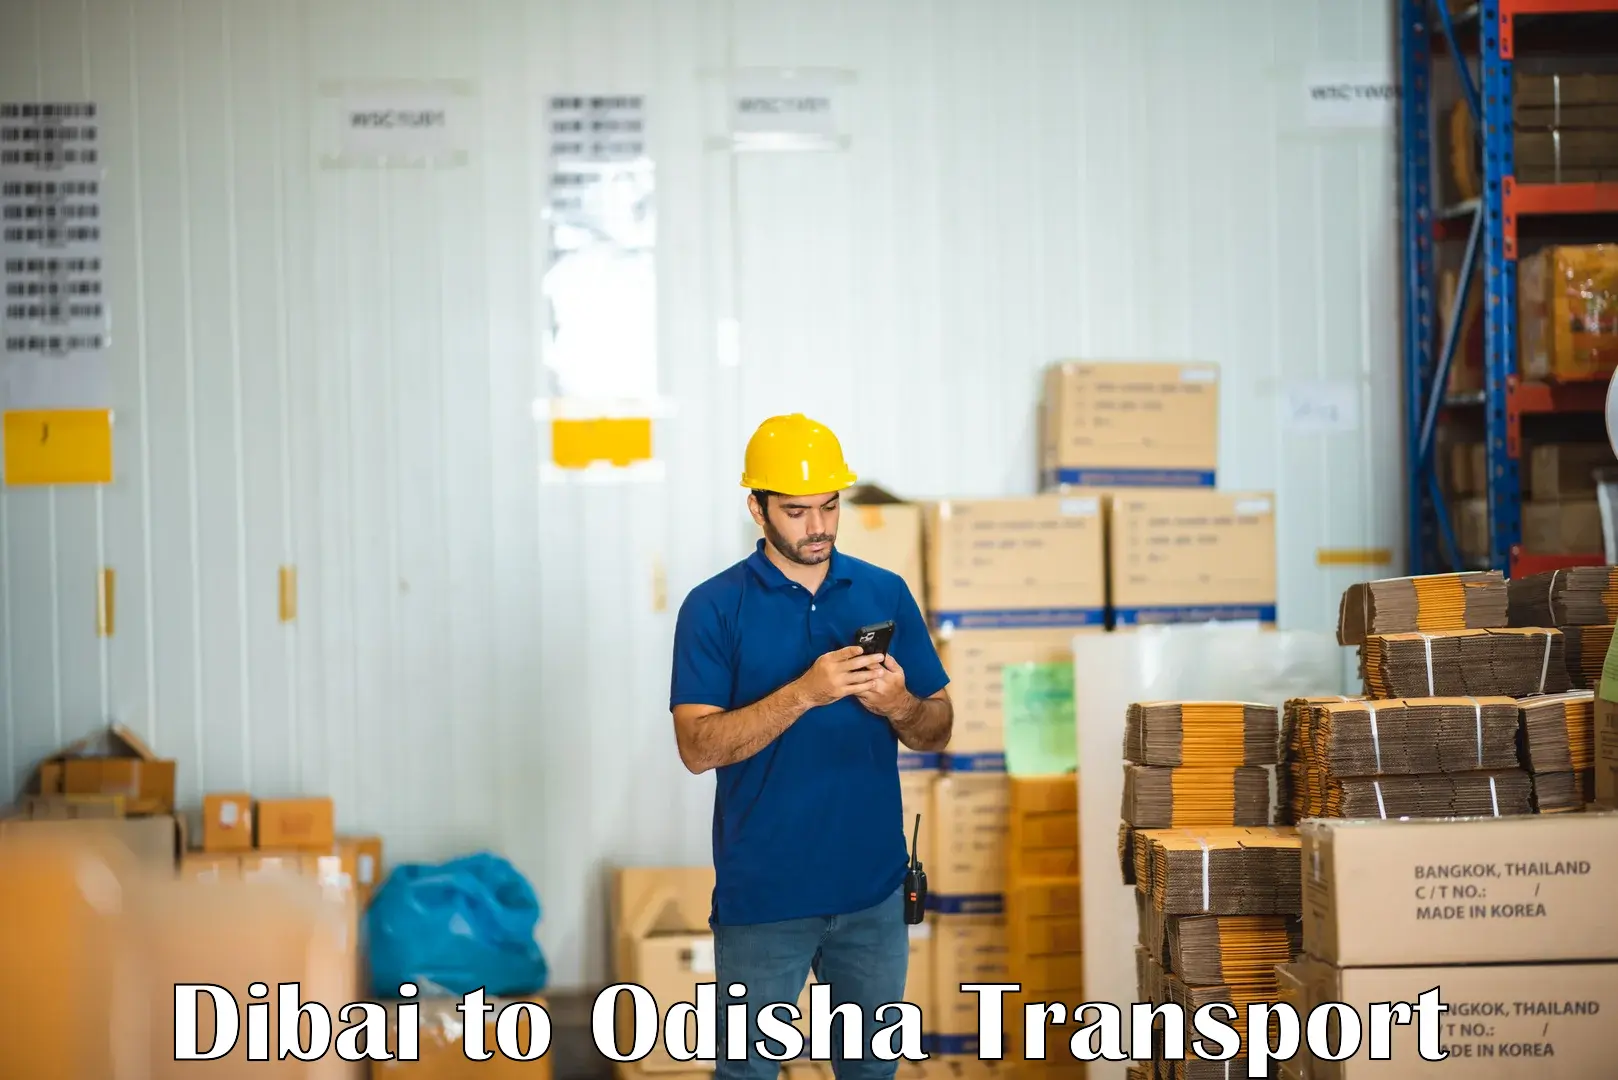 Online transport service Dibai to Sohela